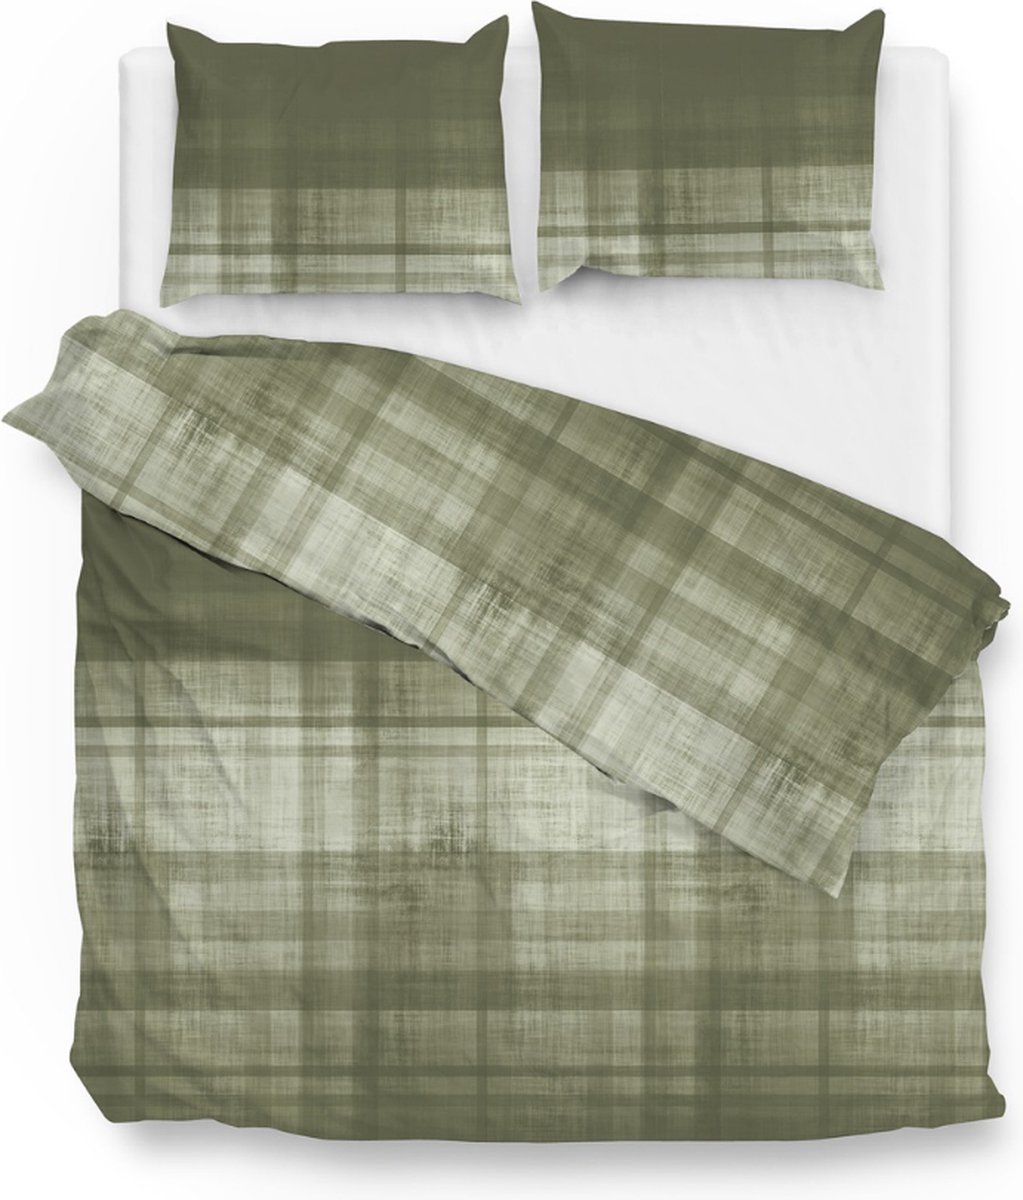 Warme flanel dekbedovertrek Duco Groen - lits-jumeaux (240x200/220) - hoogwaardig en zacht - ideaal tegen de kou